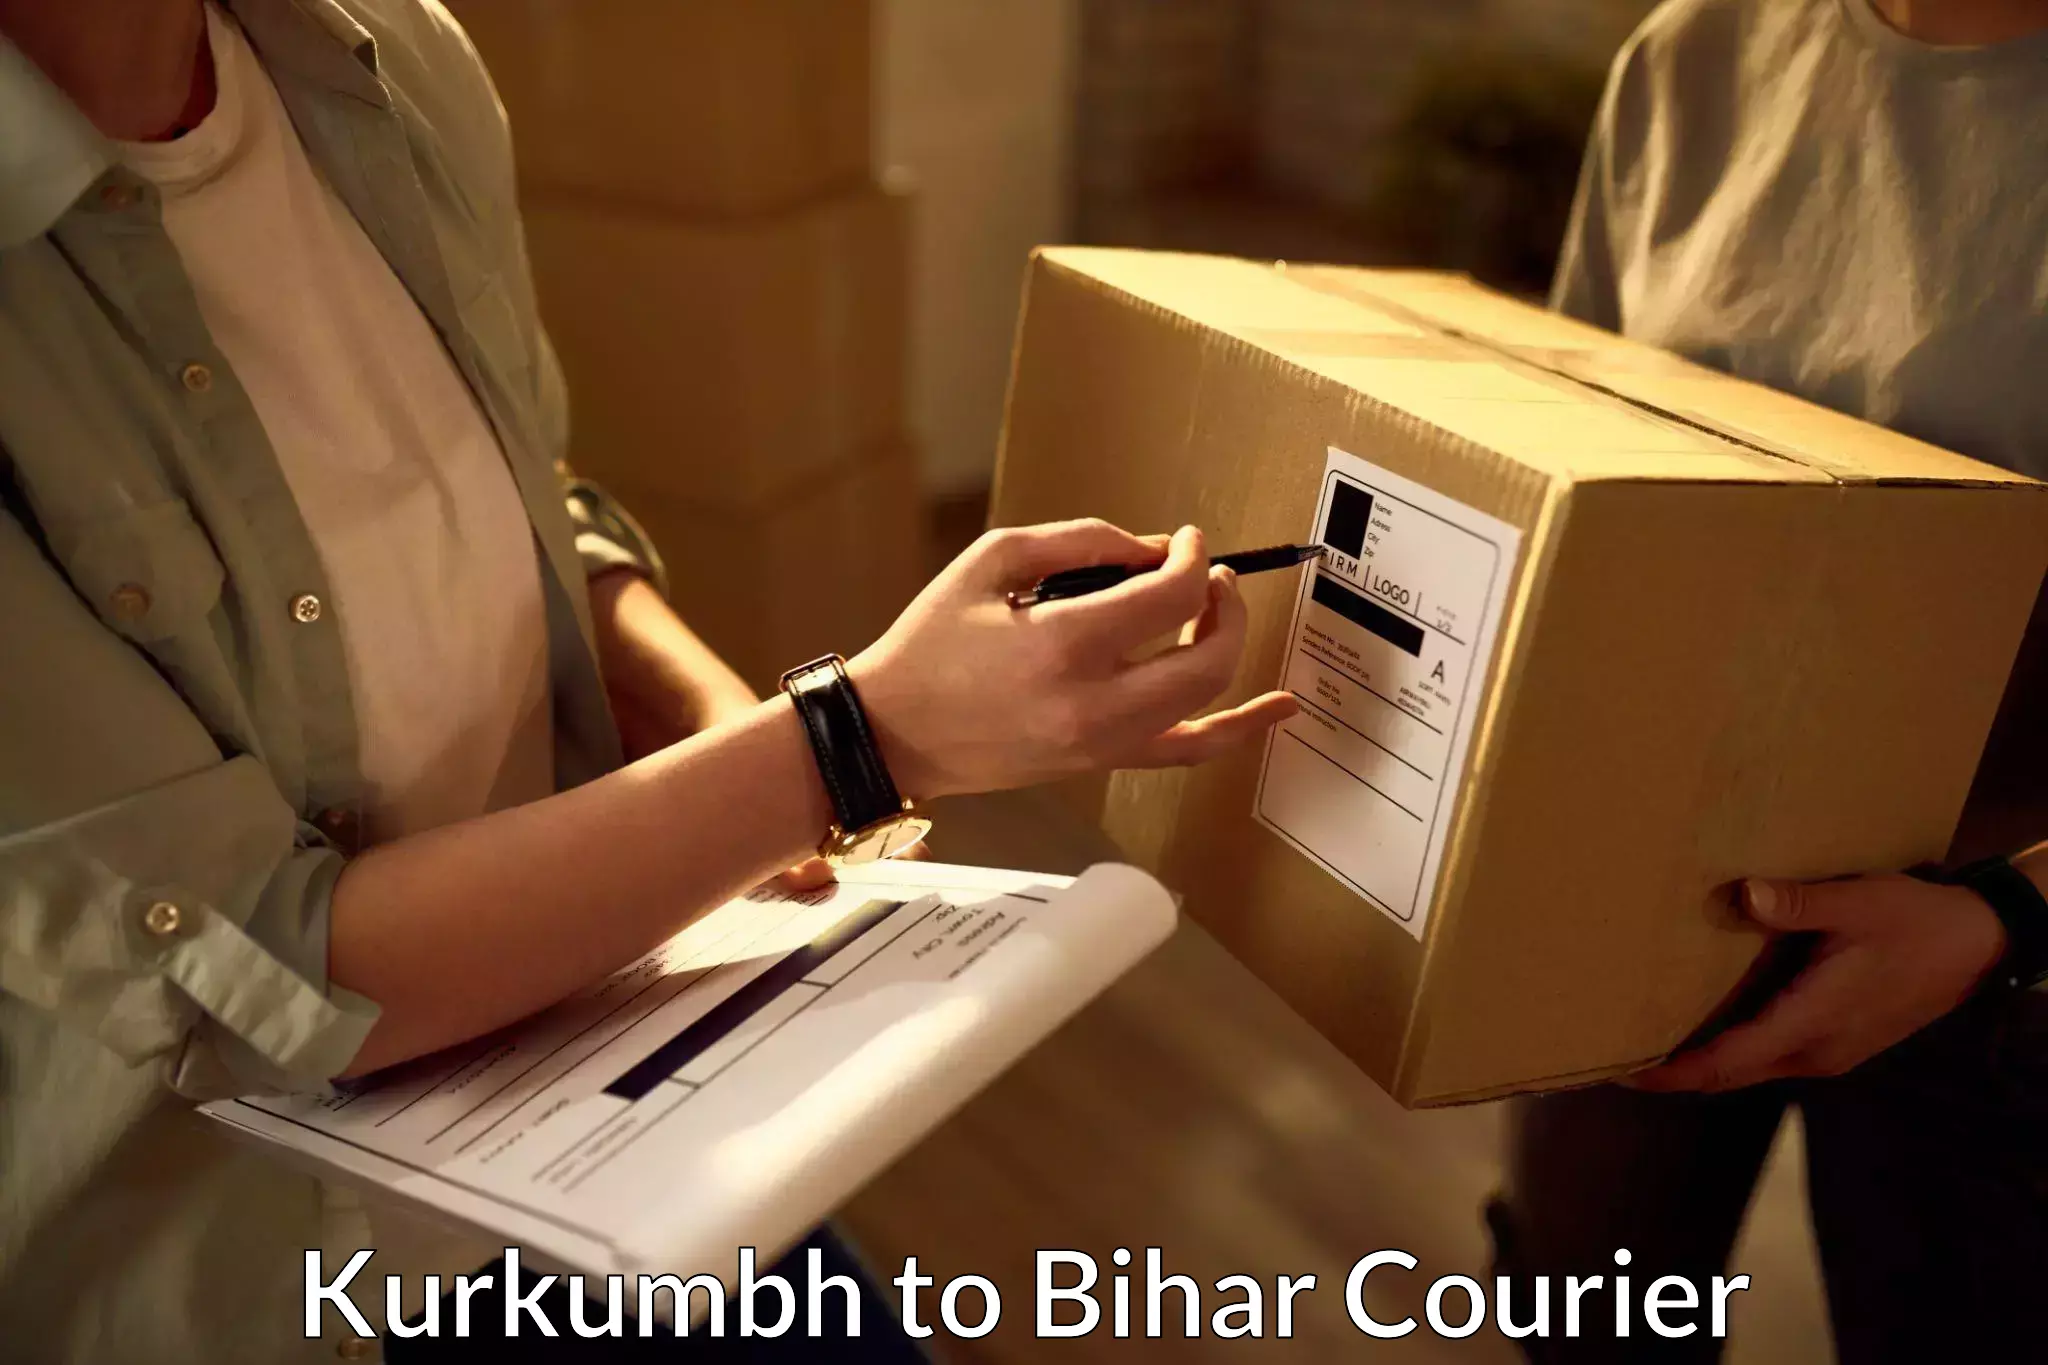 Urban courier service Kurkumbh to Bihar